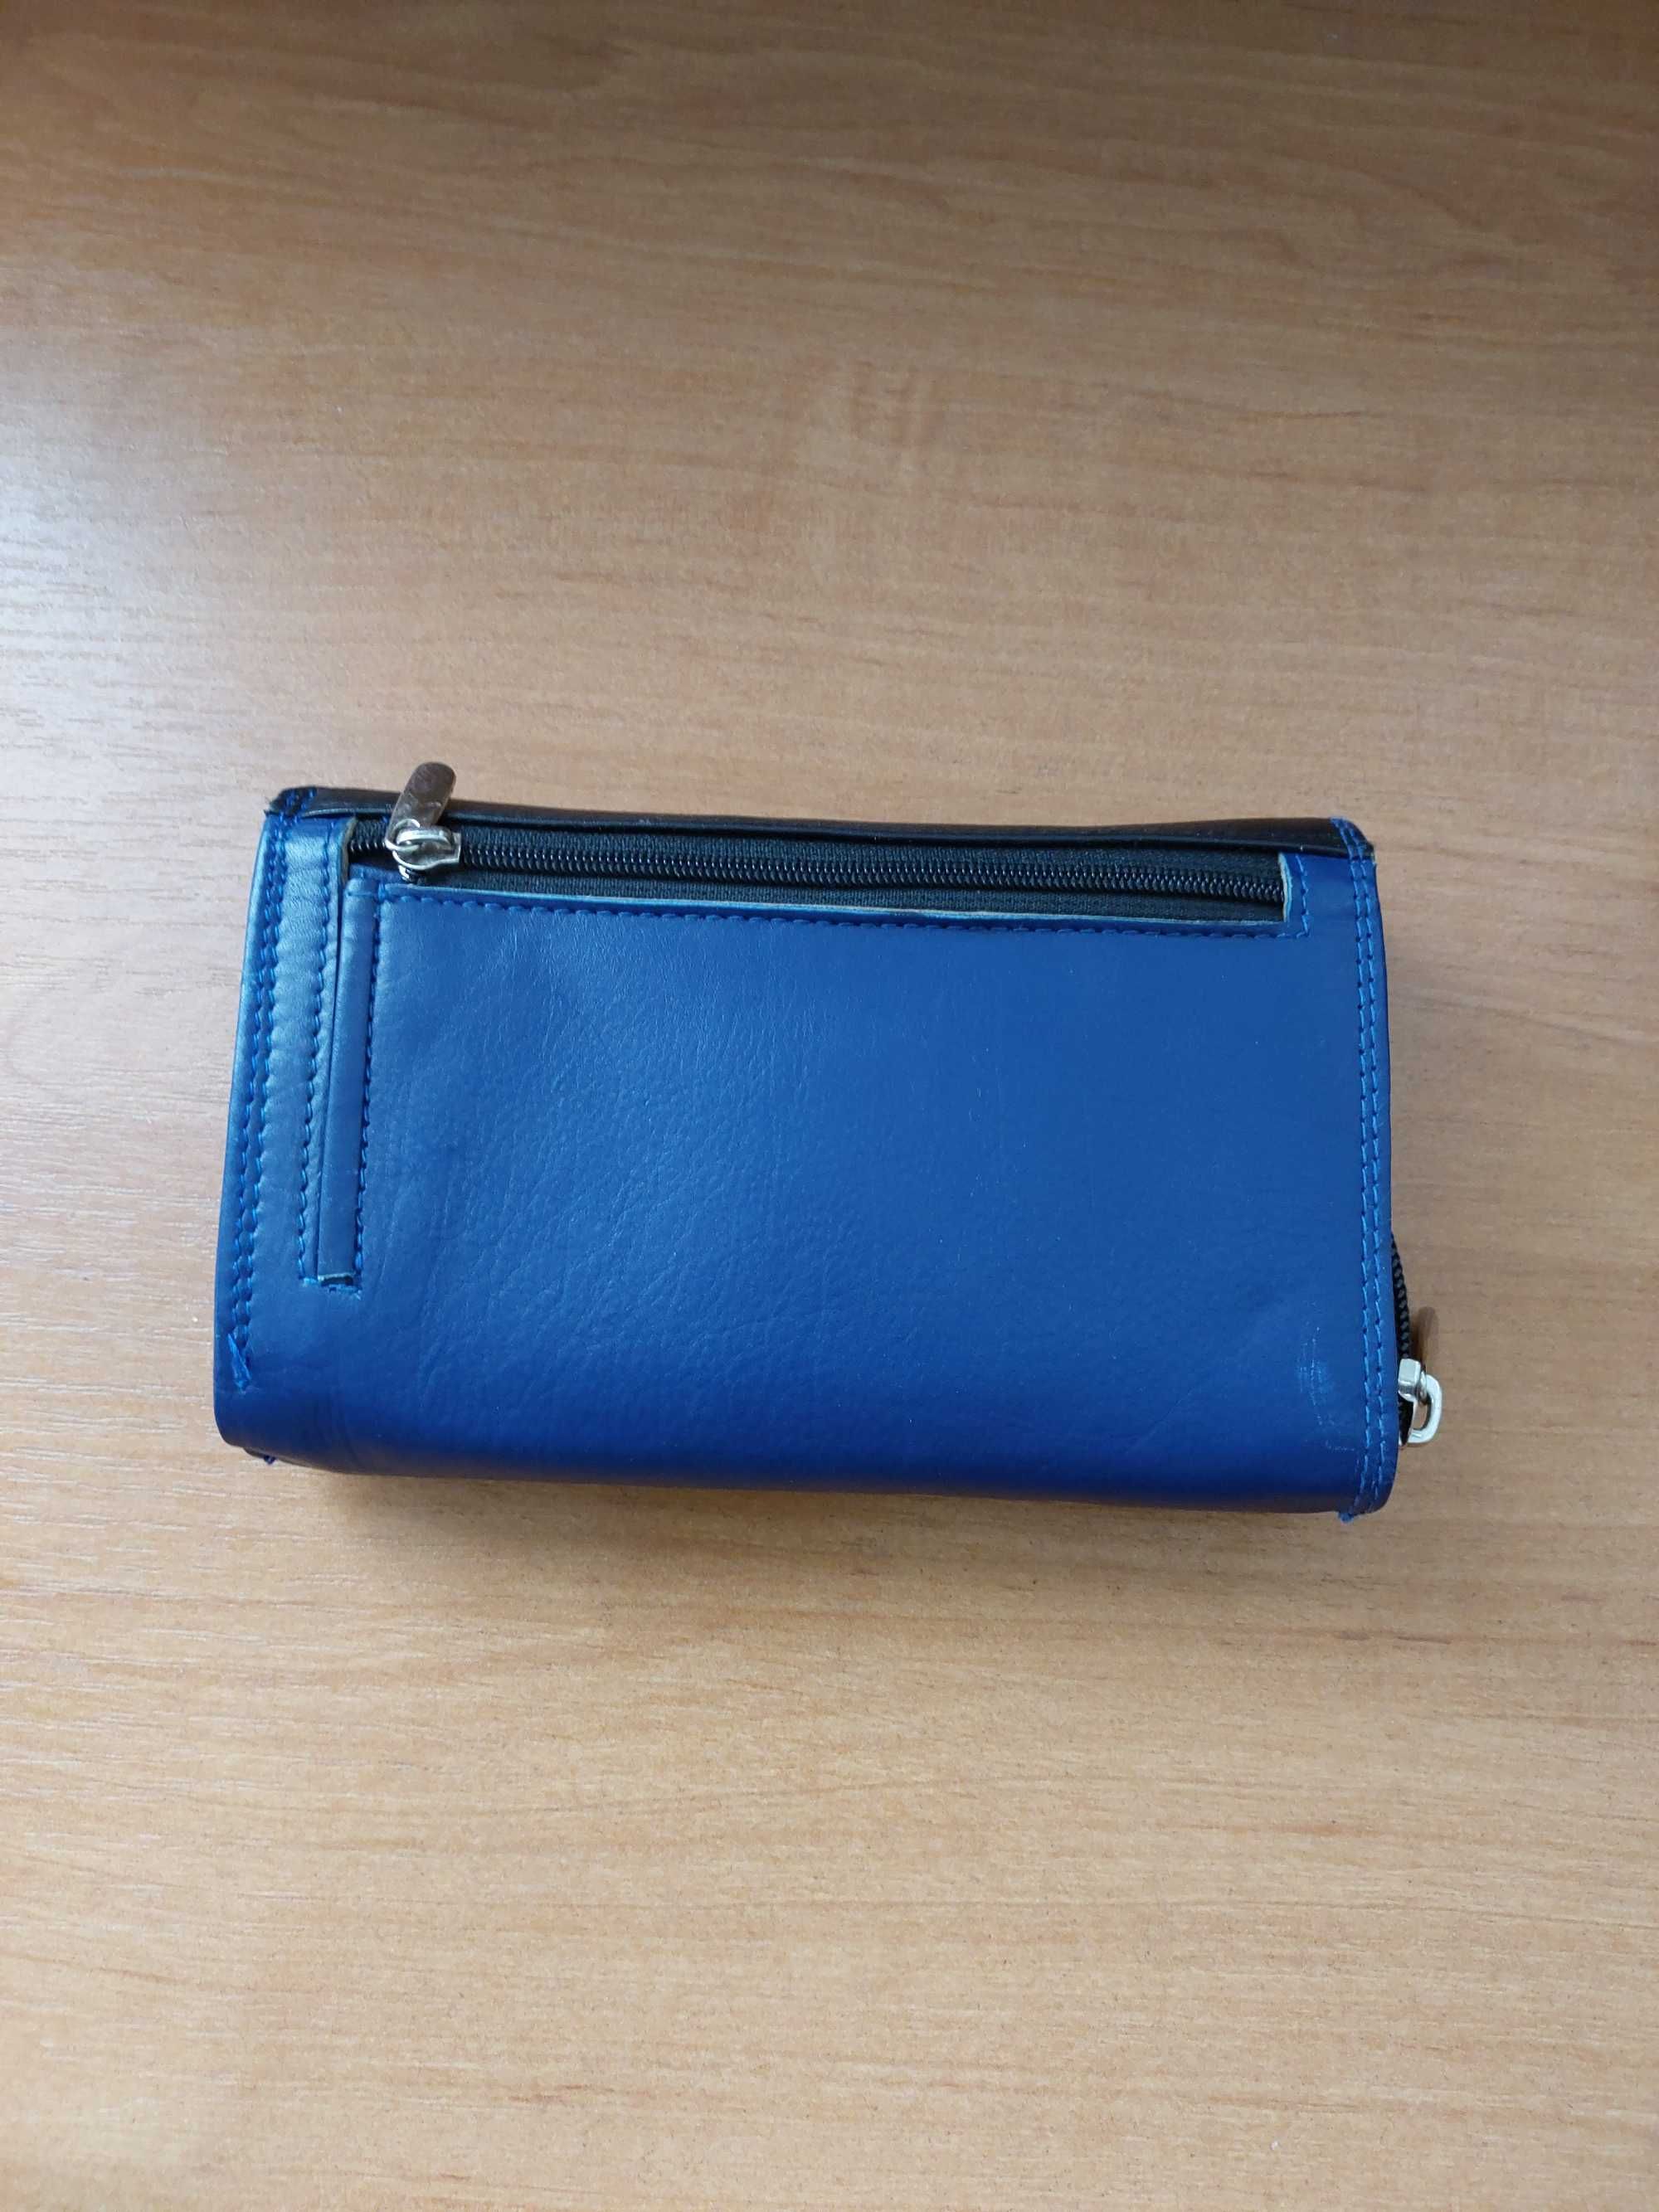 Жіночий гаманець синього кольору